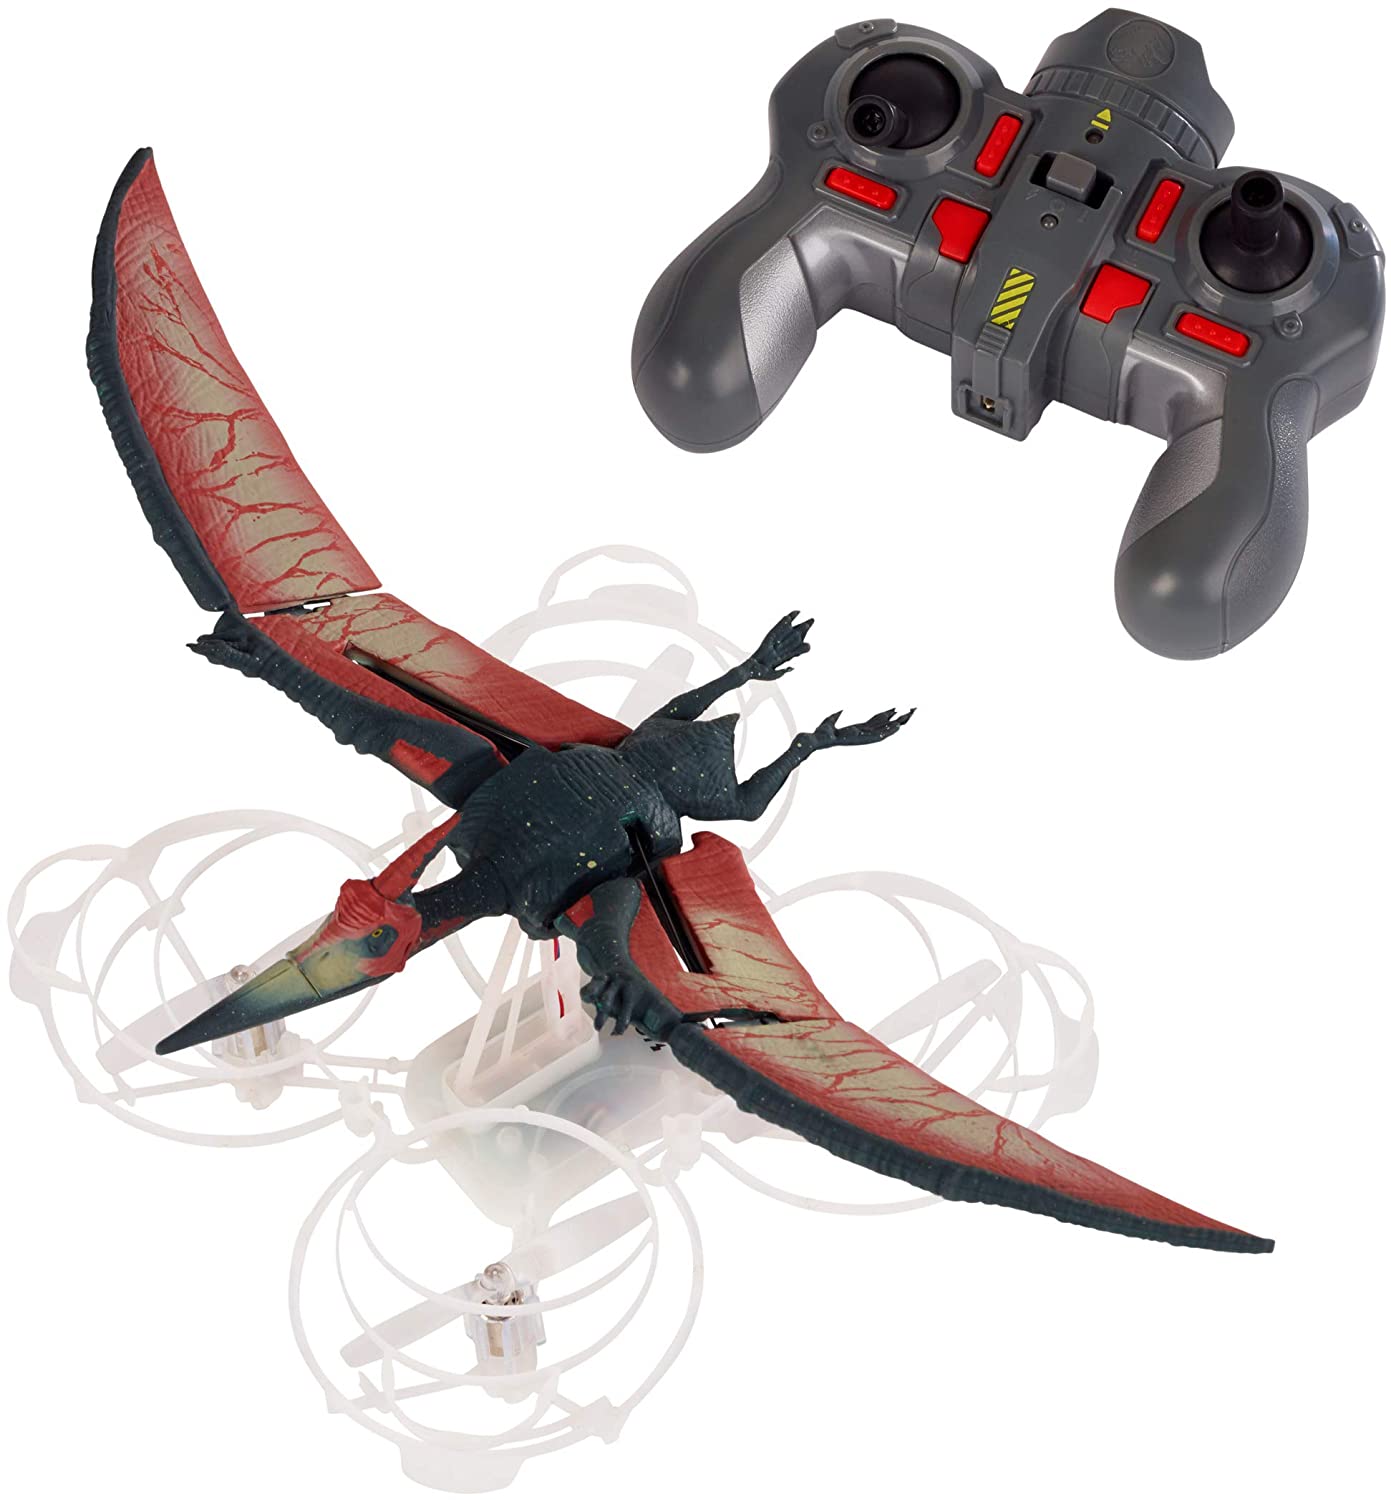 Jurassic World Pterano-drone Drone